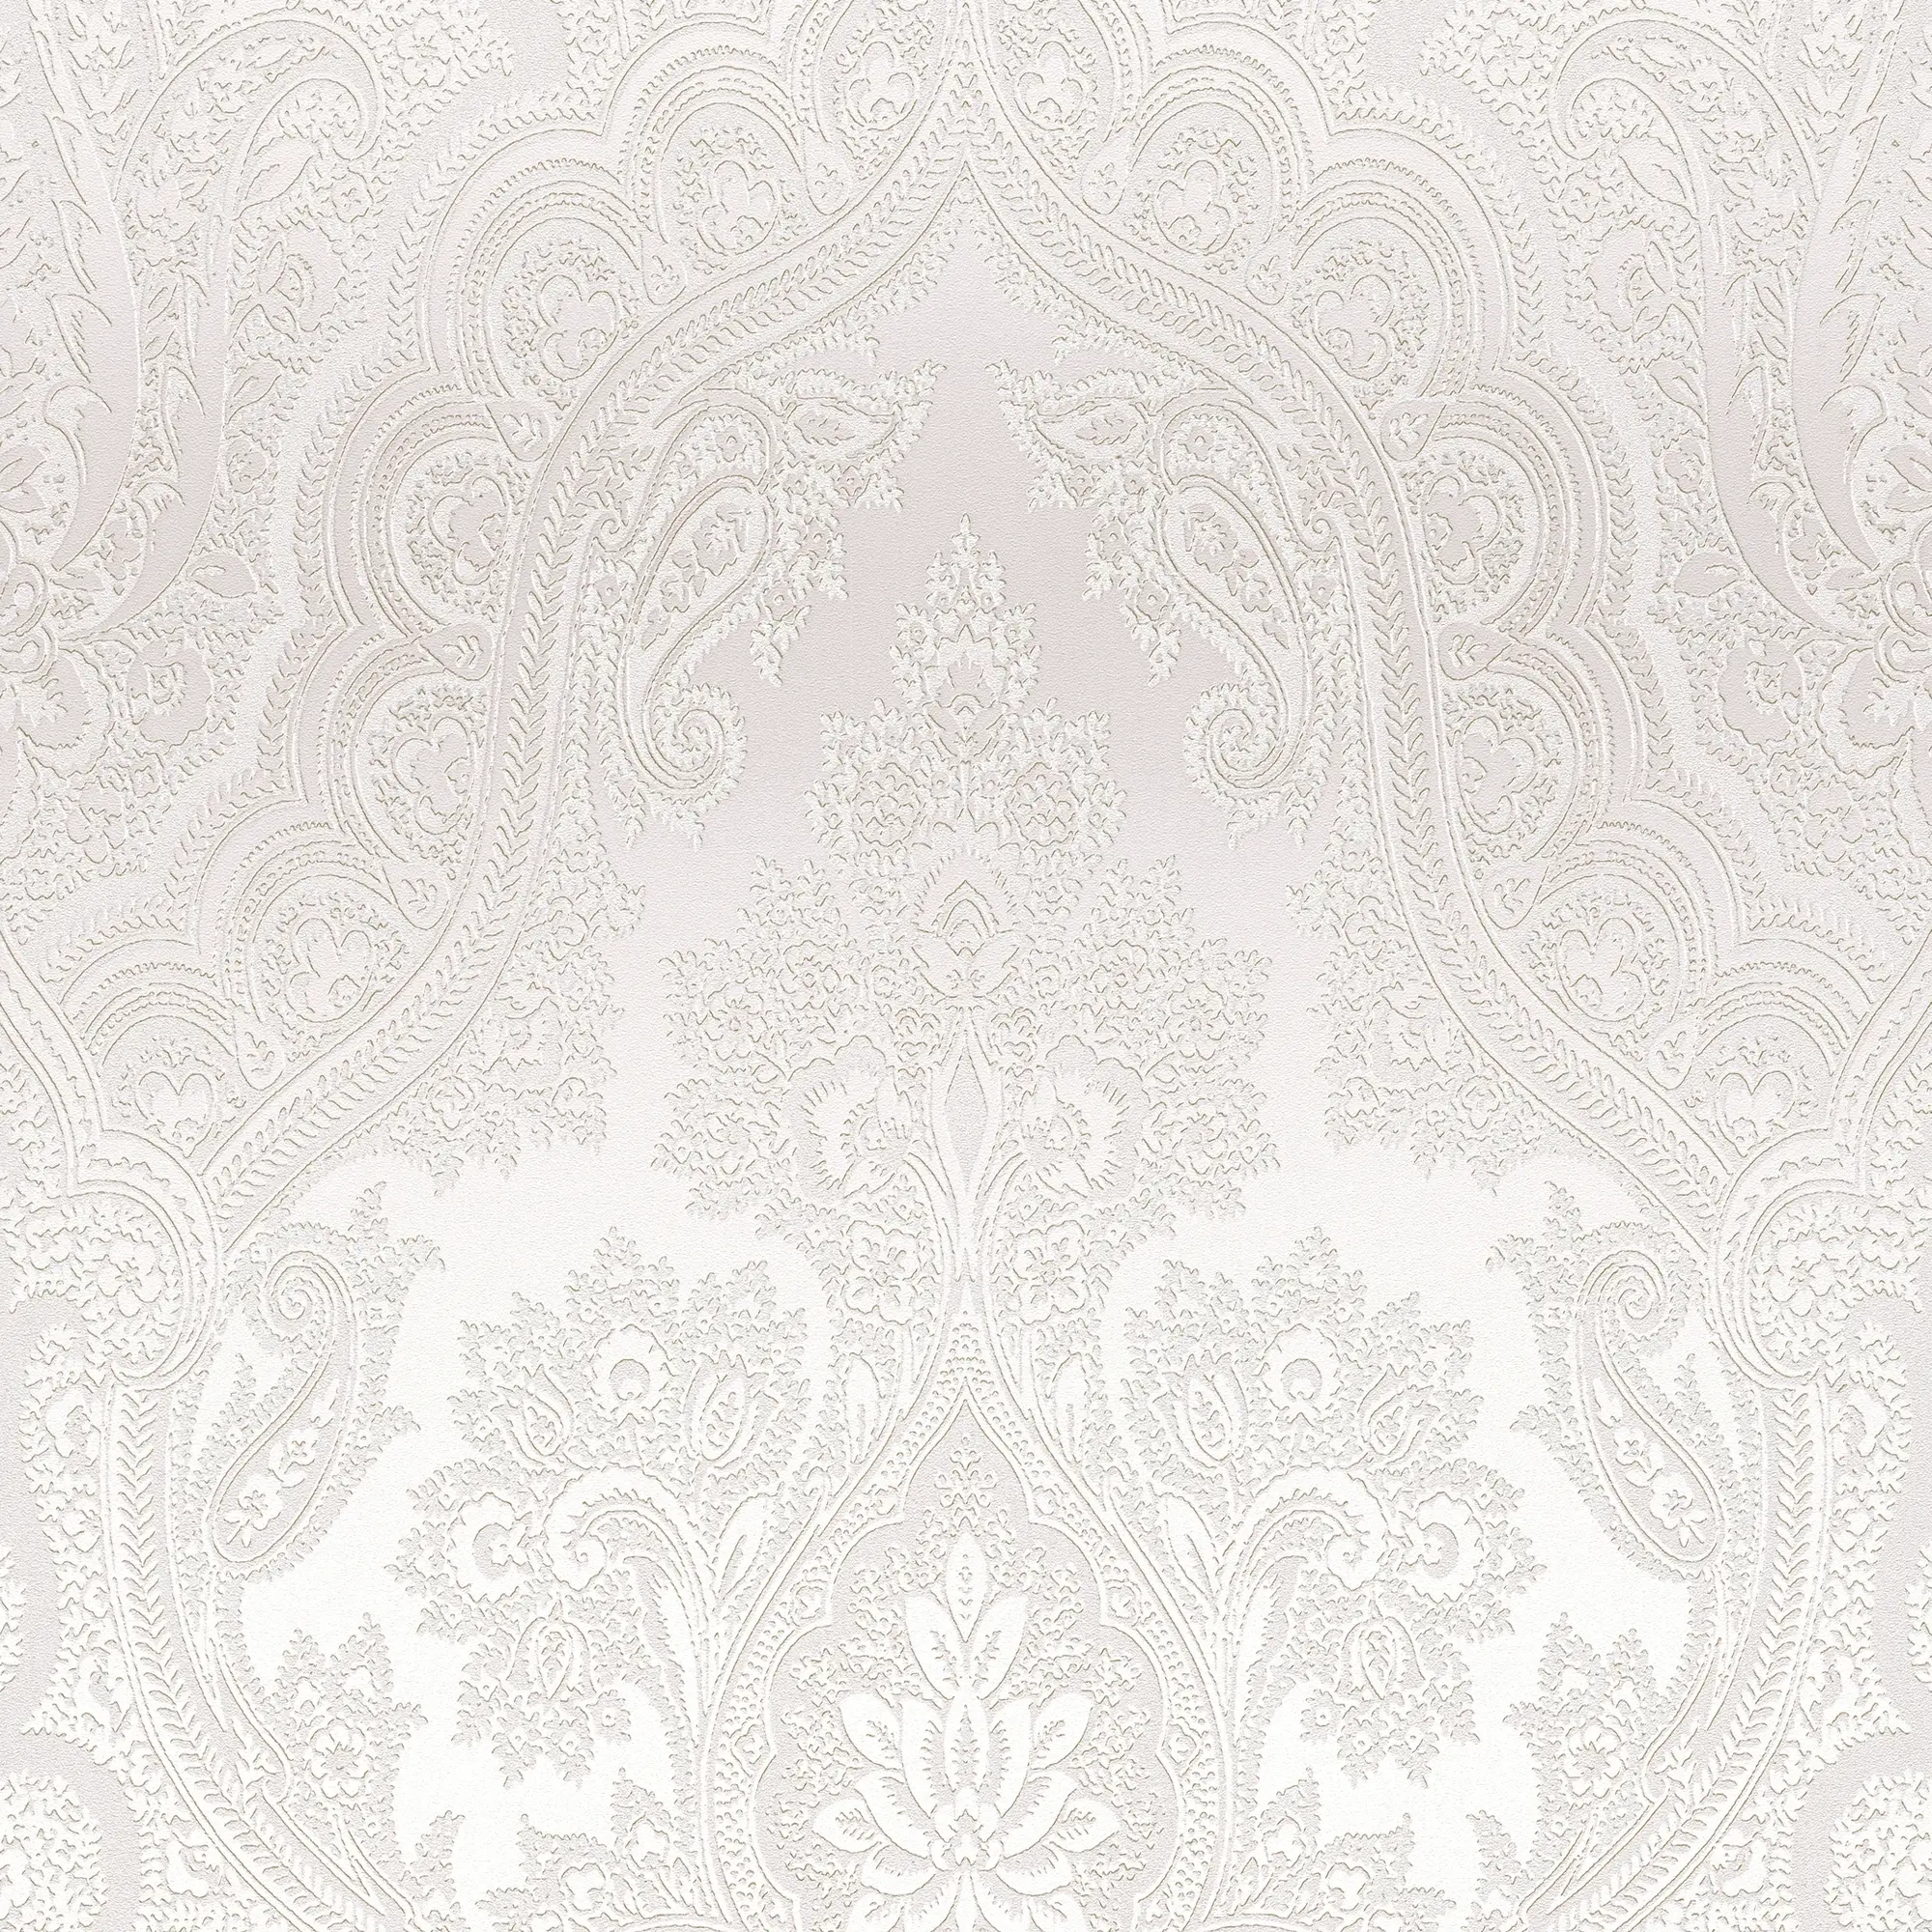 Ornament Tapete Gl盲nzend Grau Silber